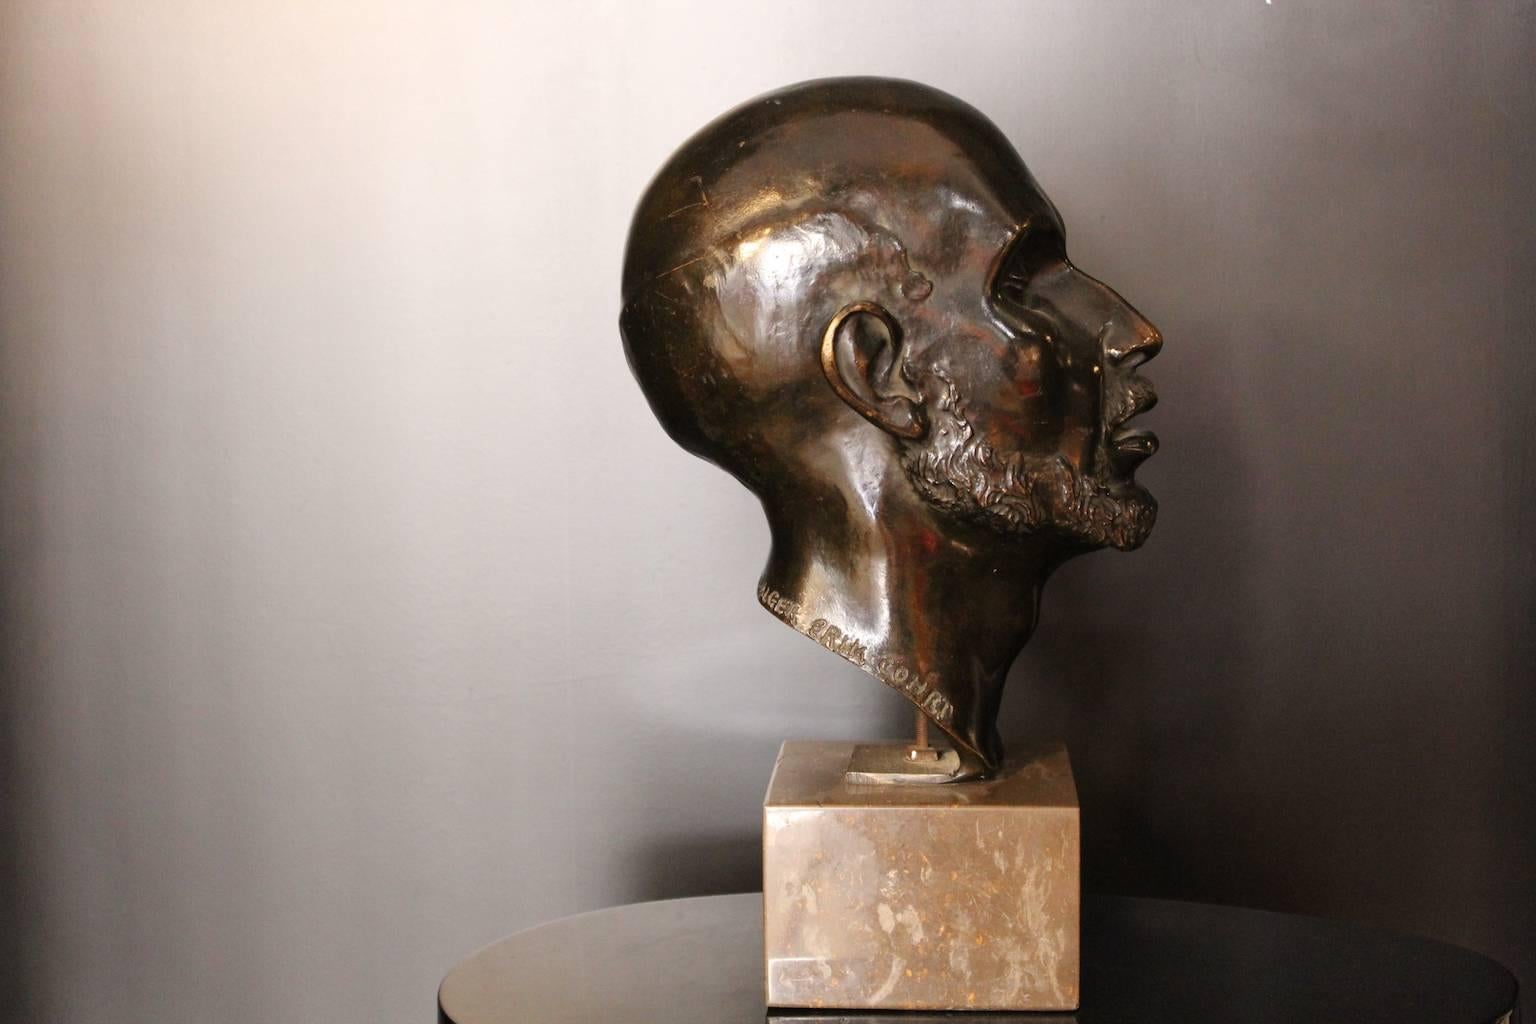 1920 tête d'Erik Cohort sculpture en bronze sur socle en marbre (moulage à la cire perdue par la fonderie Meroni et Radice France).
Erik Cohrt (Danemark, 1902-70) a étudié à l'Académie royale de Rome et a vécu à Alger
depuis de nombreuses années